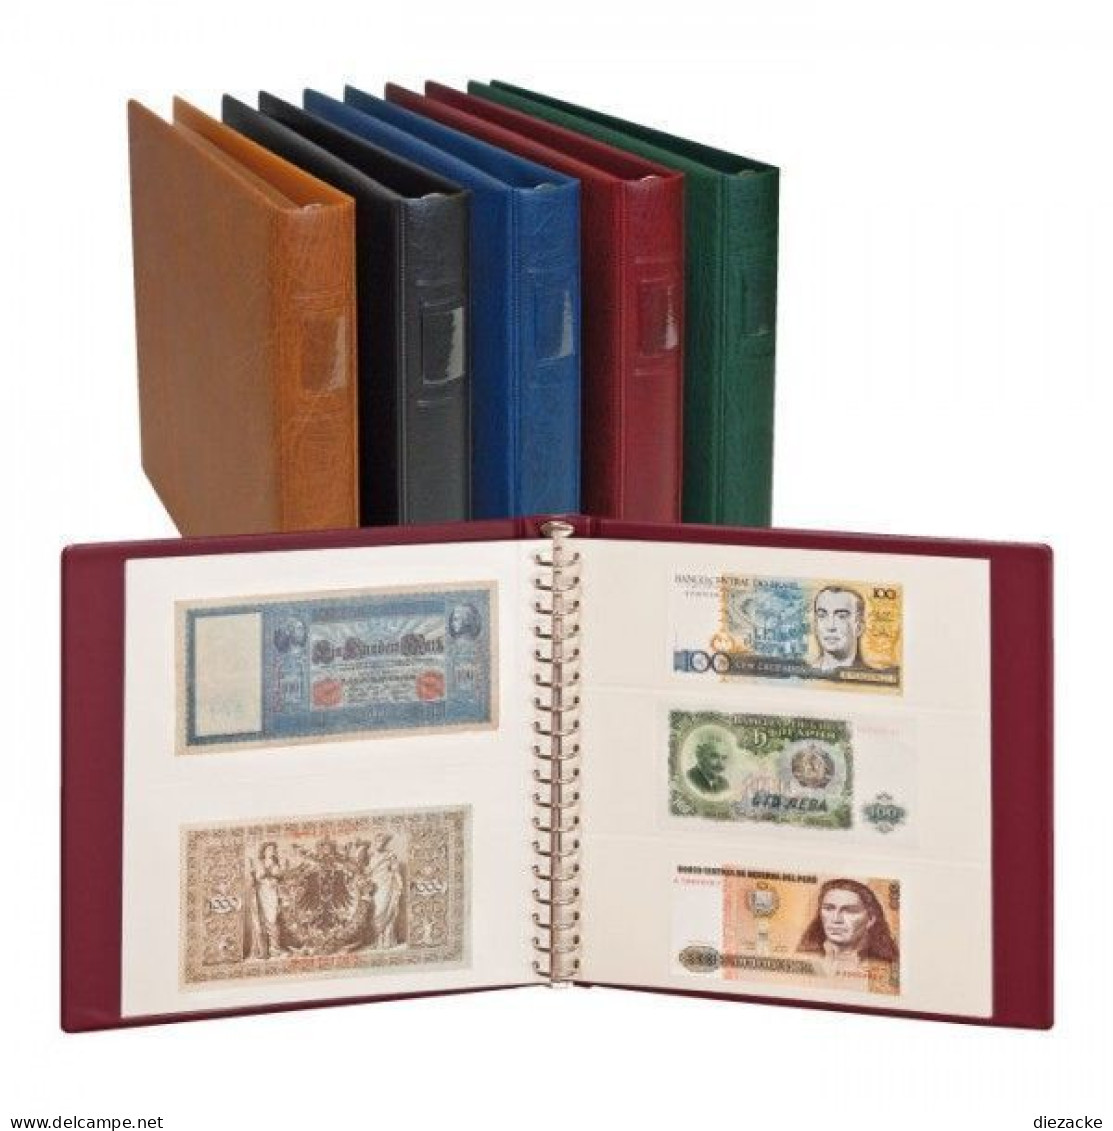 Lindner Banknotenalbum Regular Weinrot 2810-W Neu - Supplies And Equipment